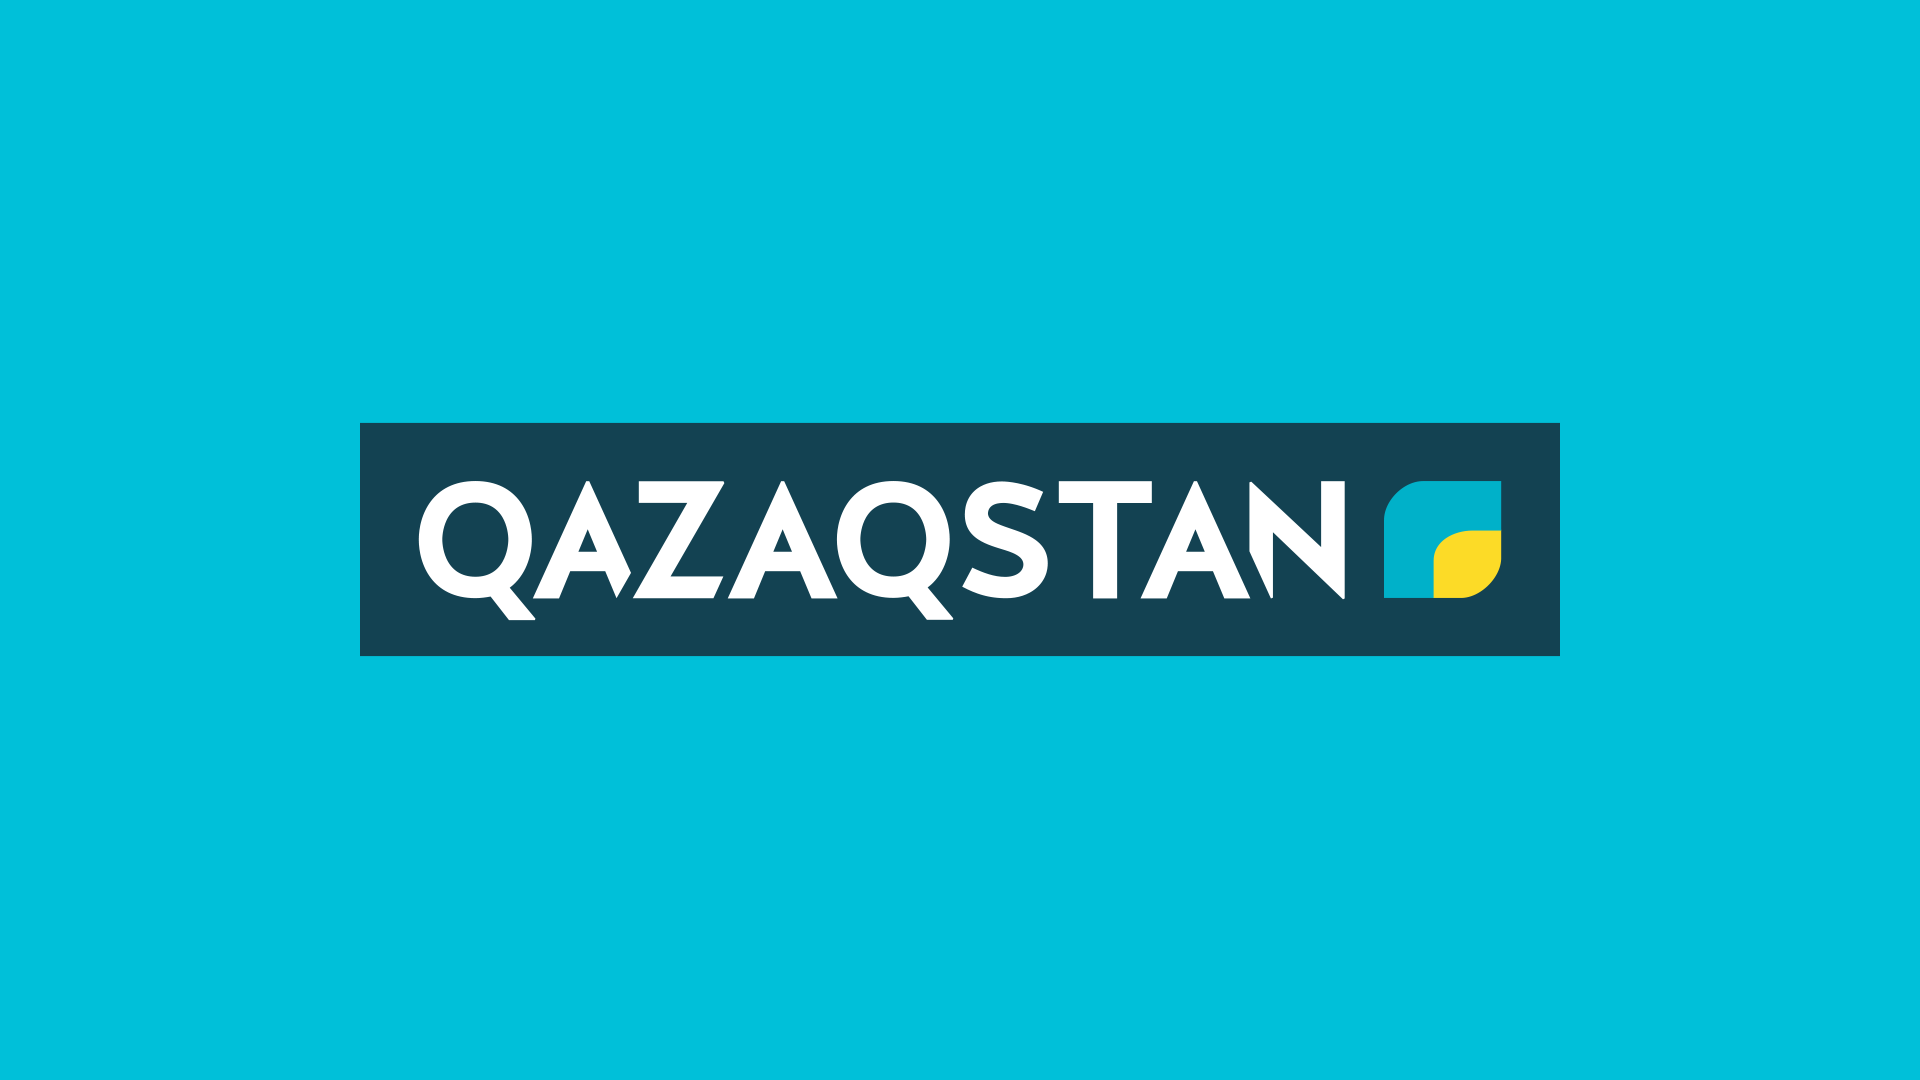 Казахстан тв прямой. Телеканал Казахстан. Qazaqstan (Телеканал). Телеканал Казахстан логотип. Каналы Казахстана.